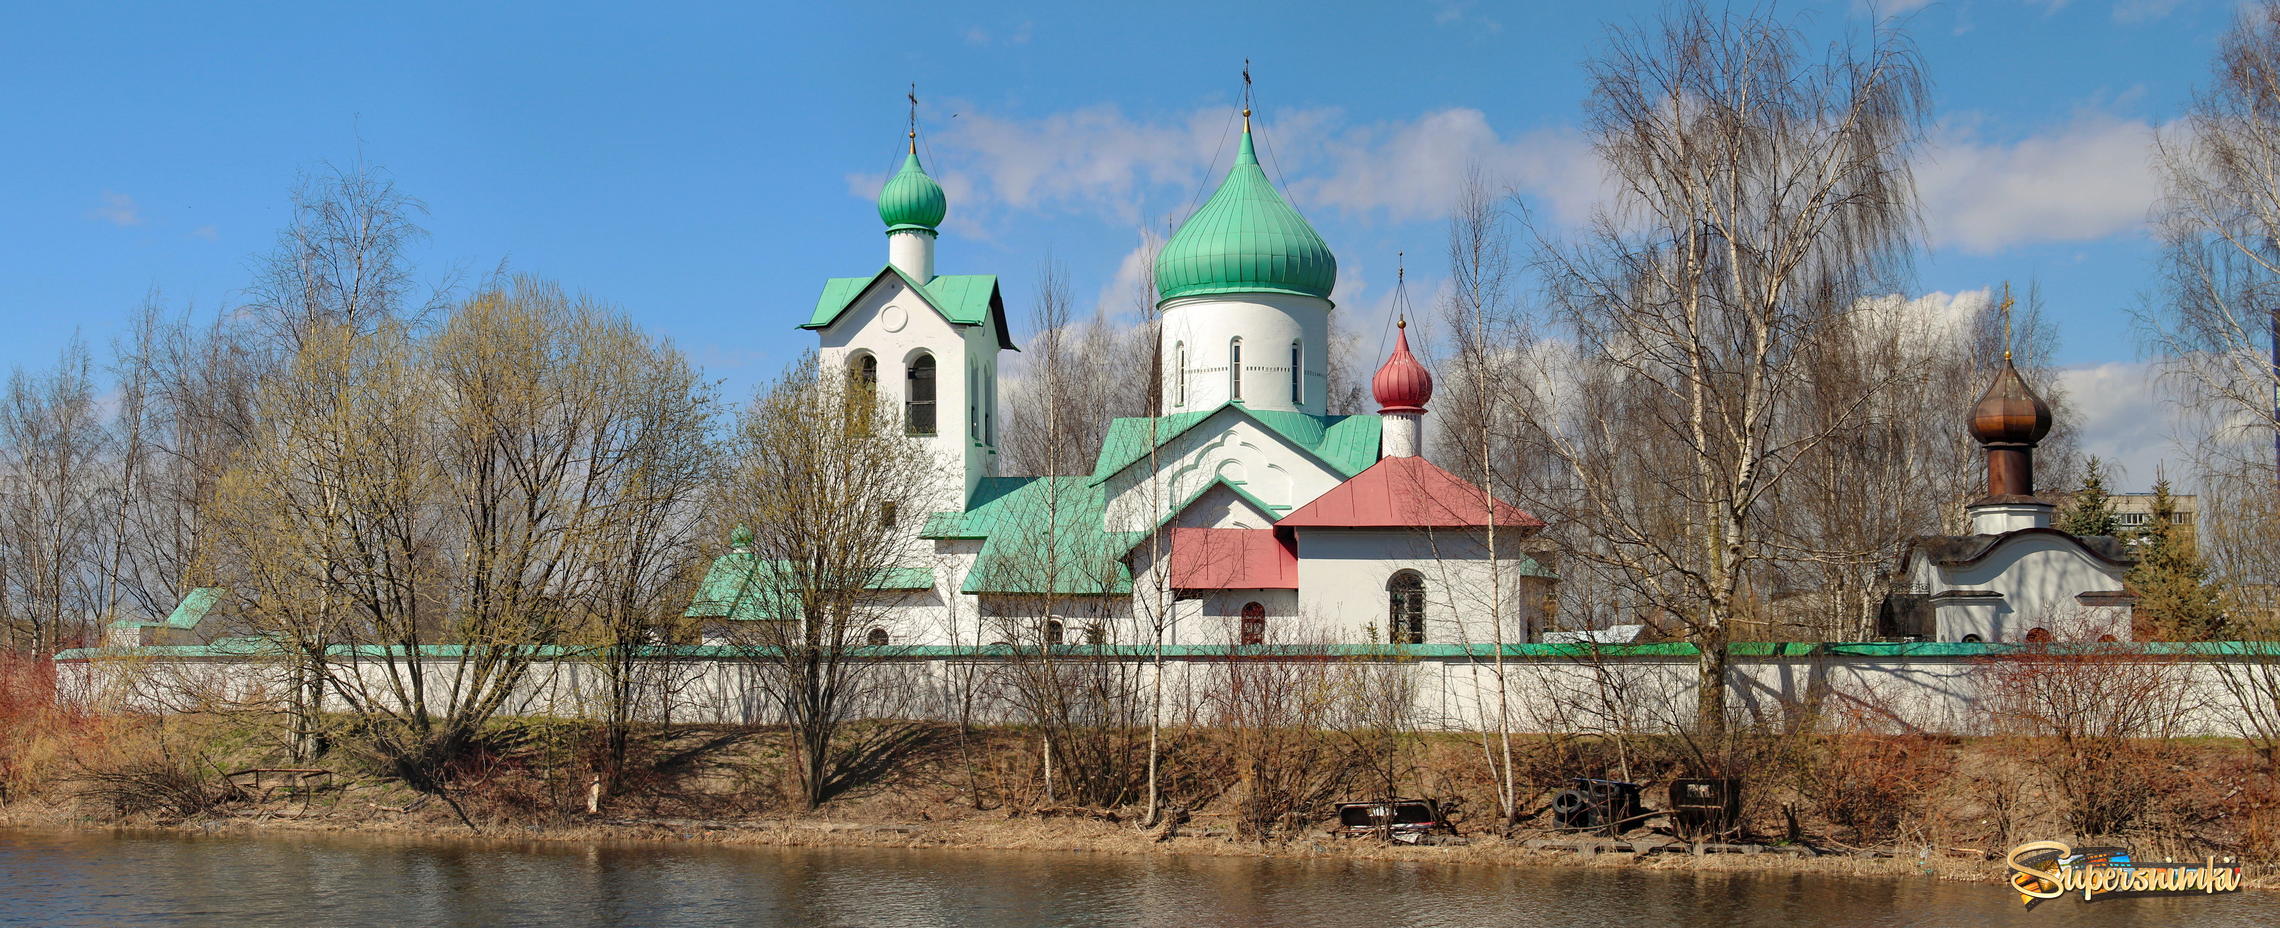 Храм Сергия Радонежского в Пулковском парке